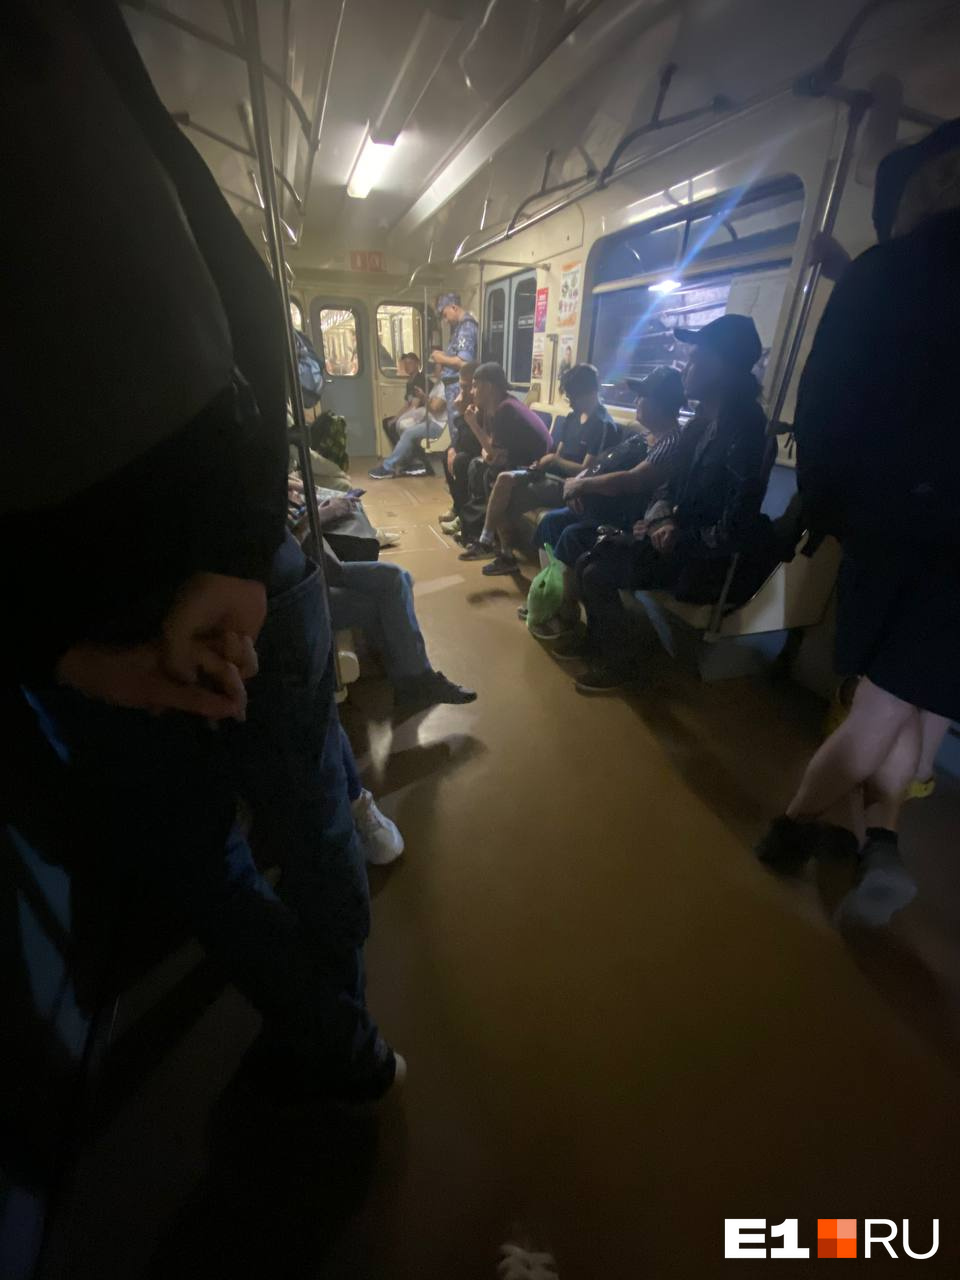 В метро Екатеринбурга на рельсы упал человек. Его вынесли на носилках